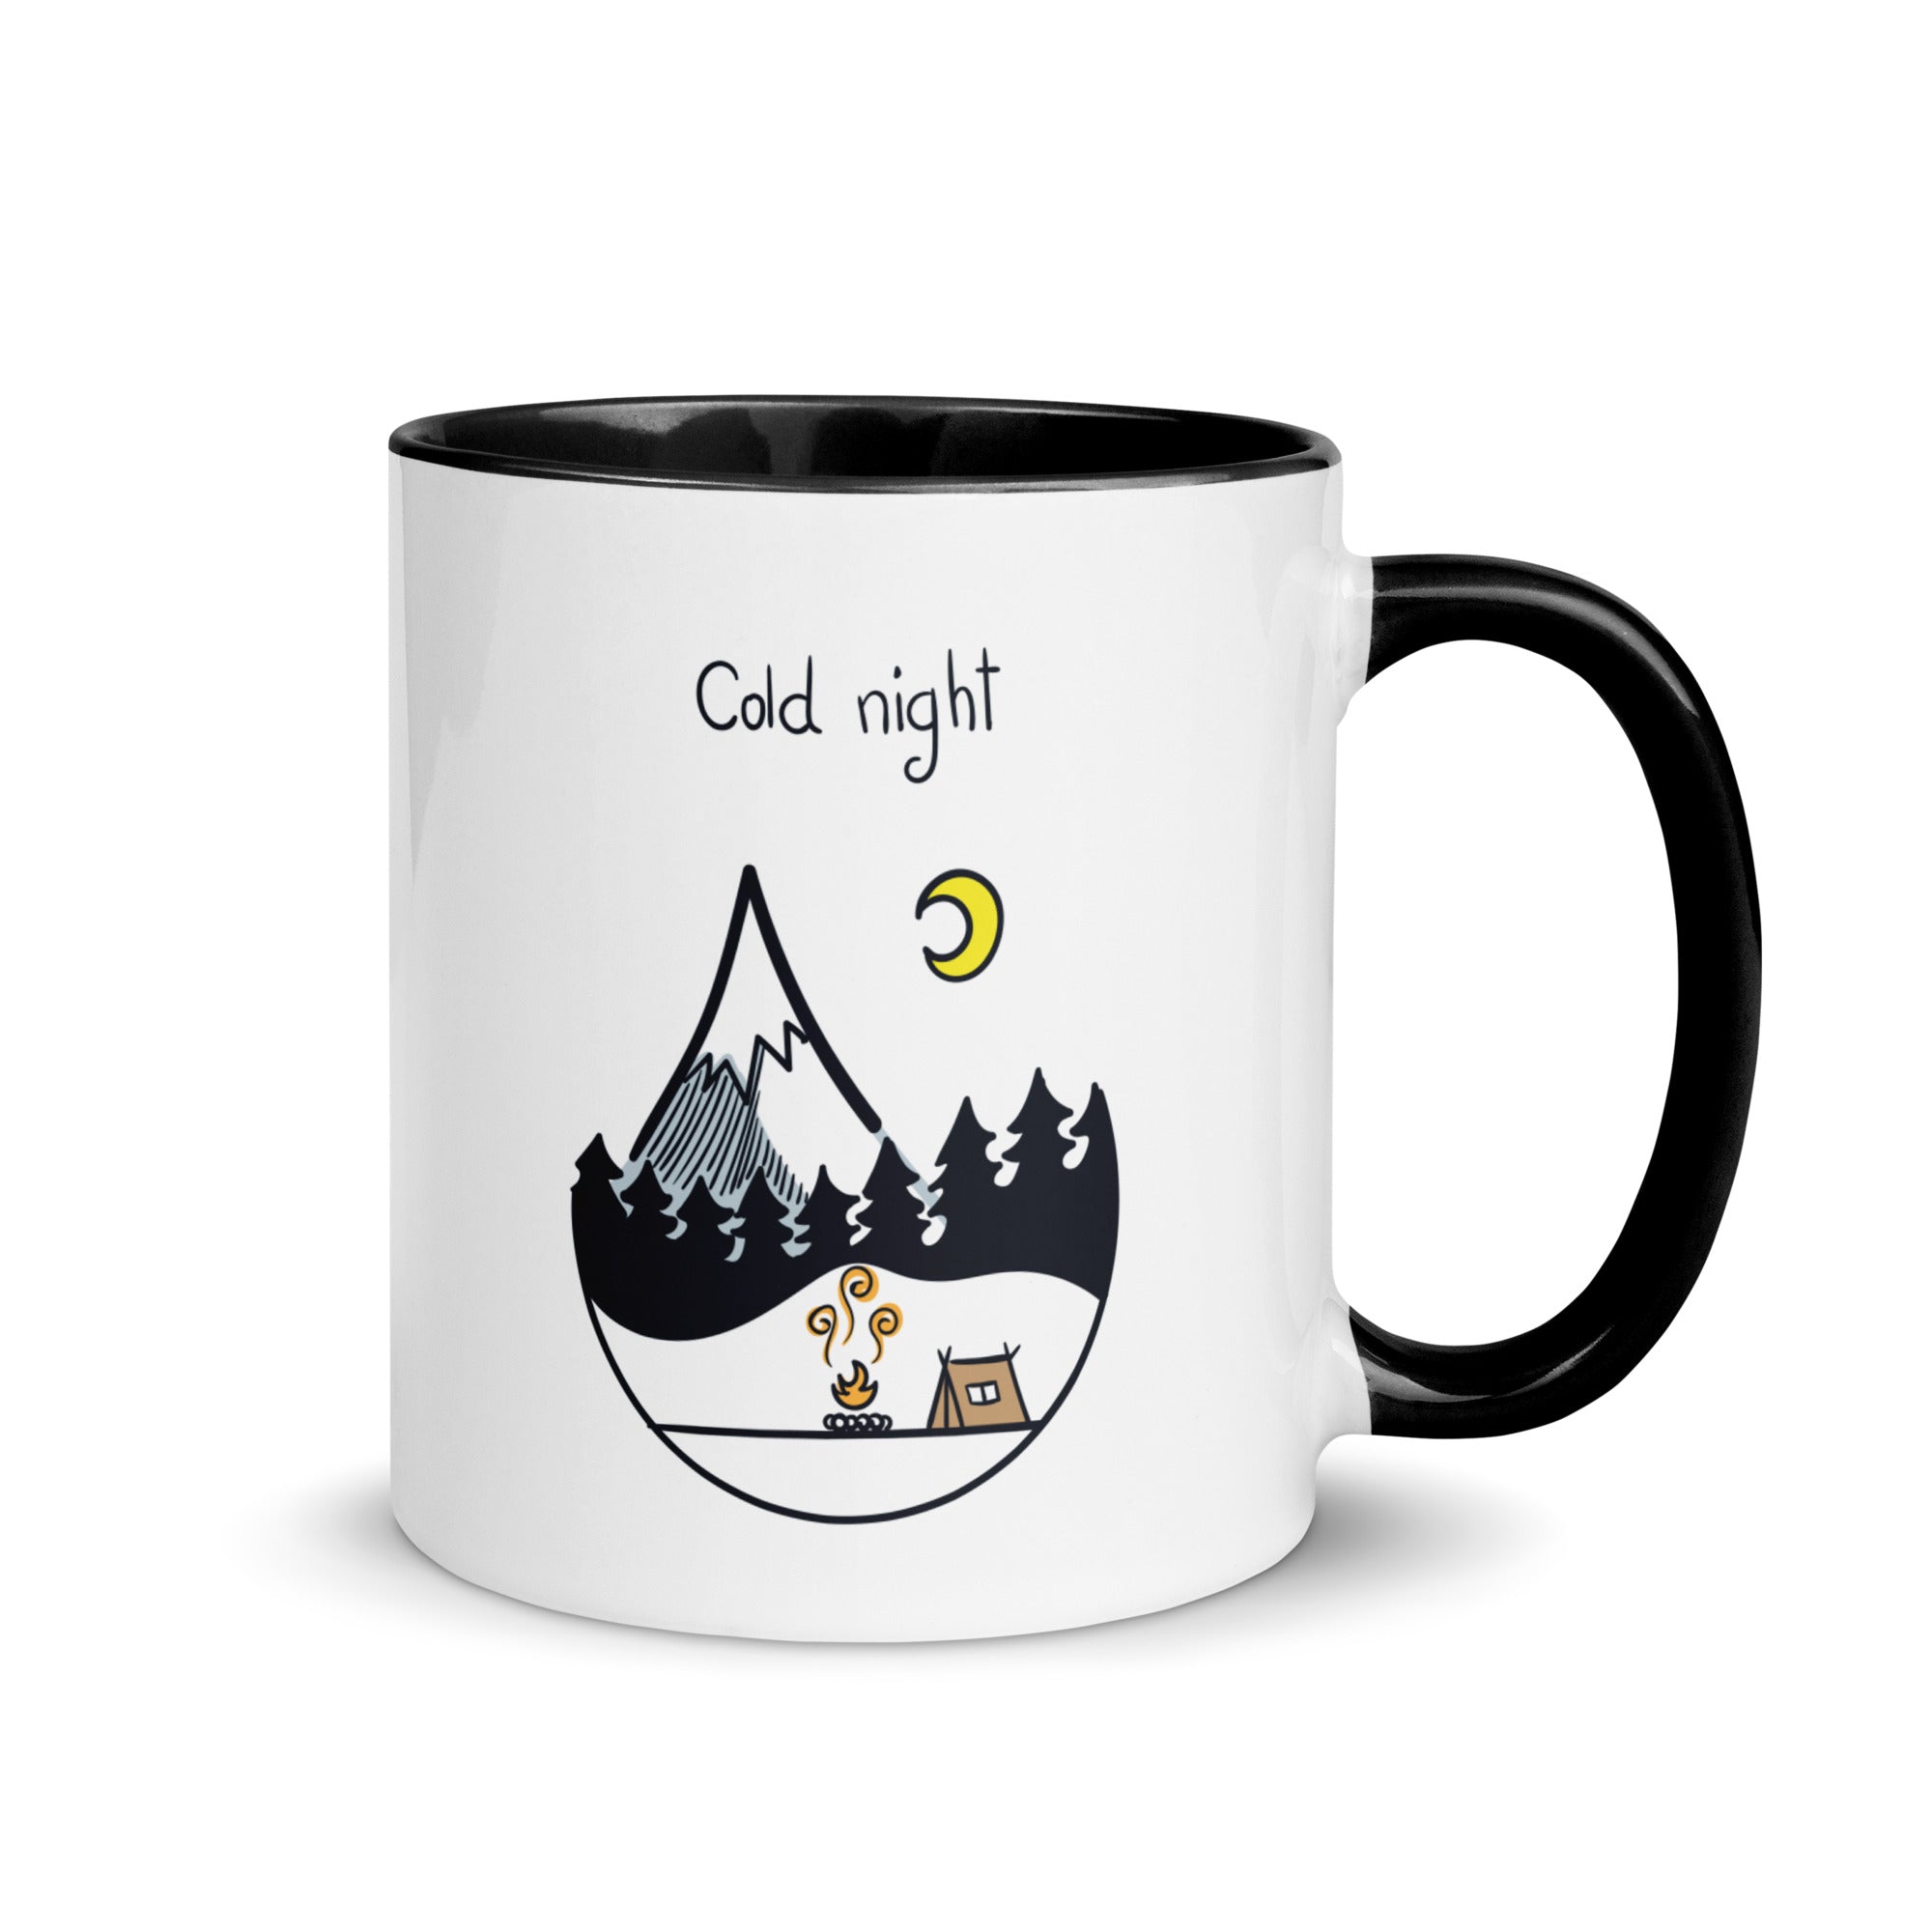 Colorful Camping "Cold Night" Mug